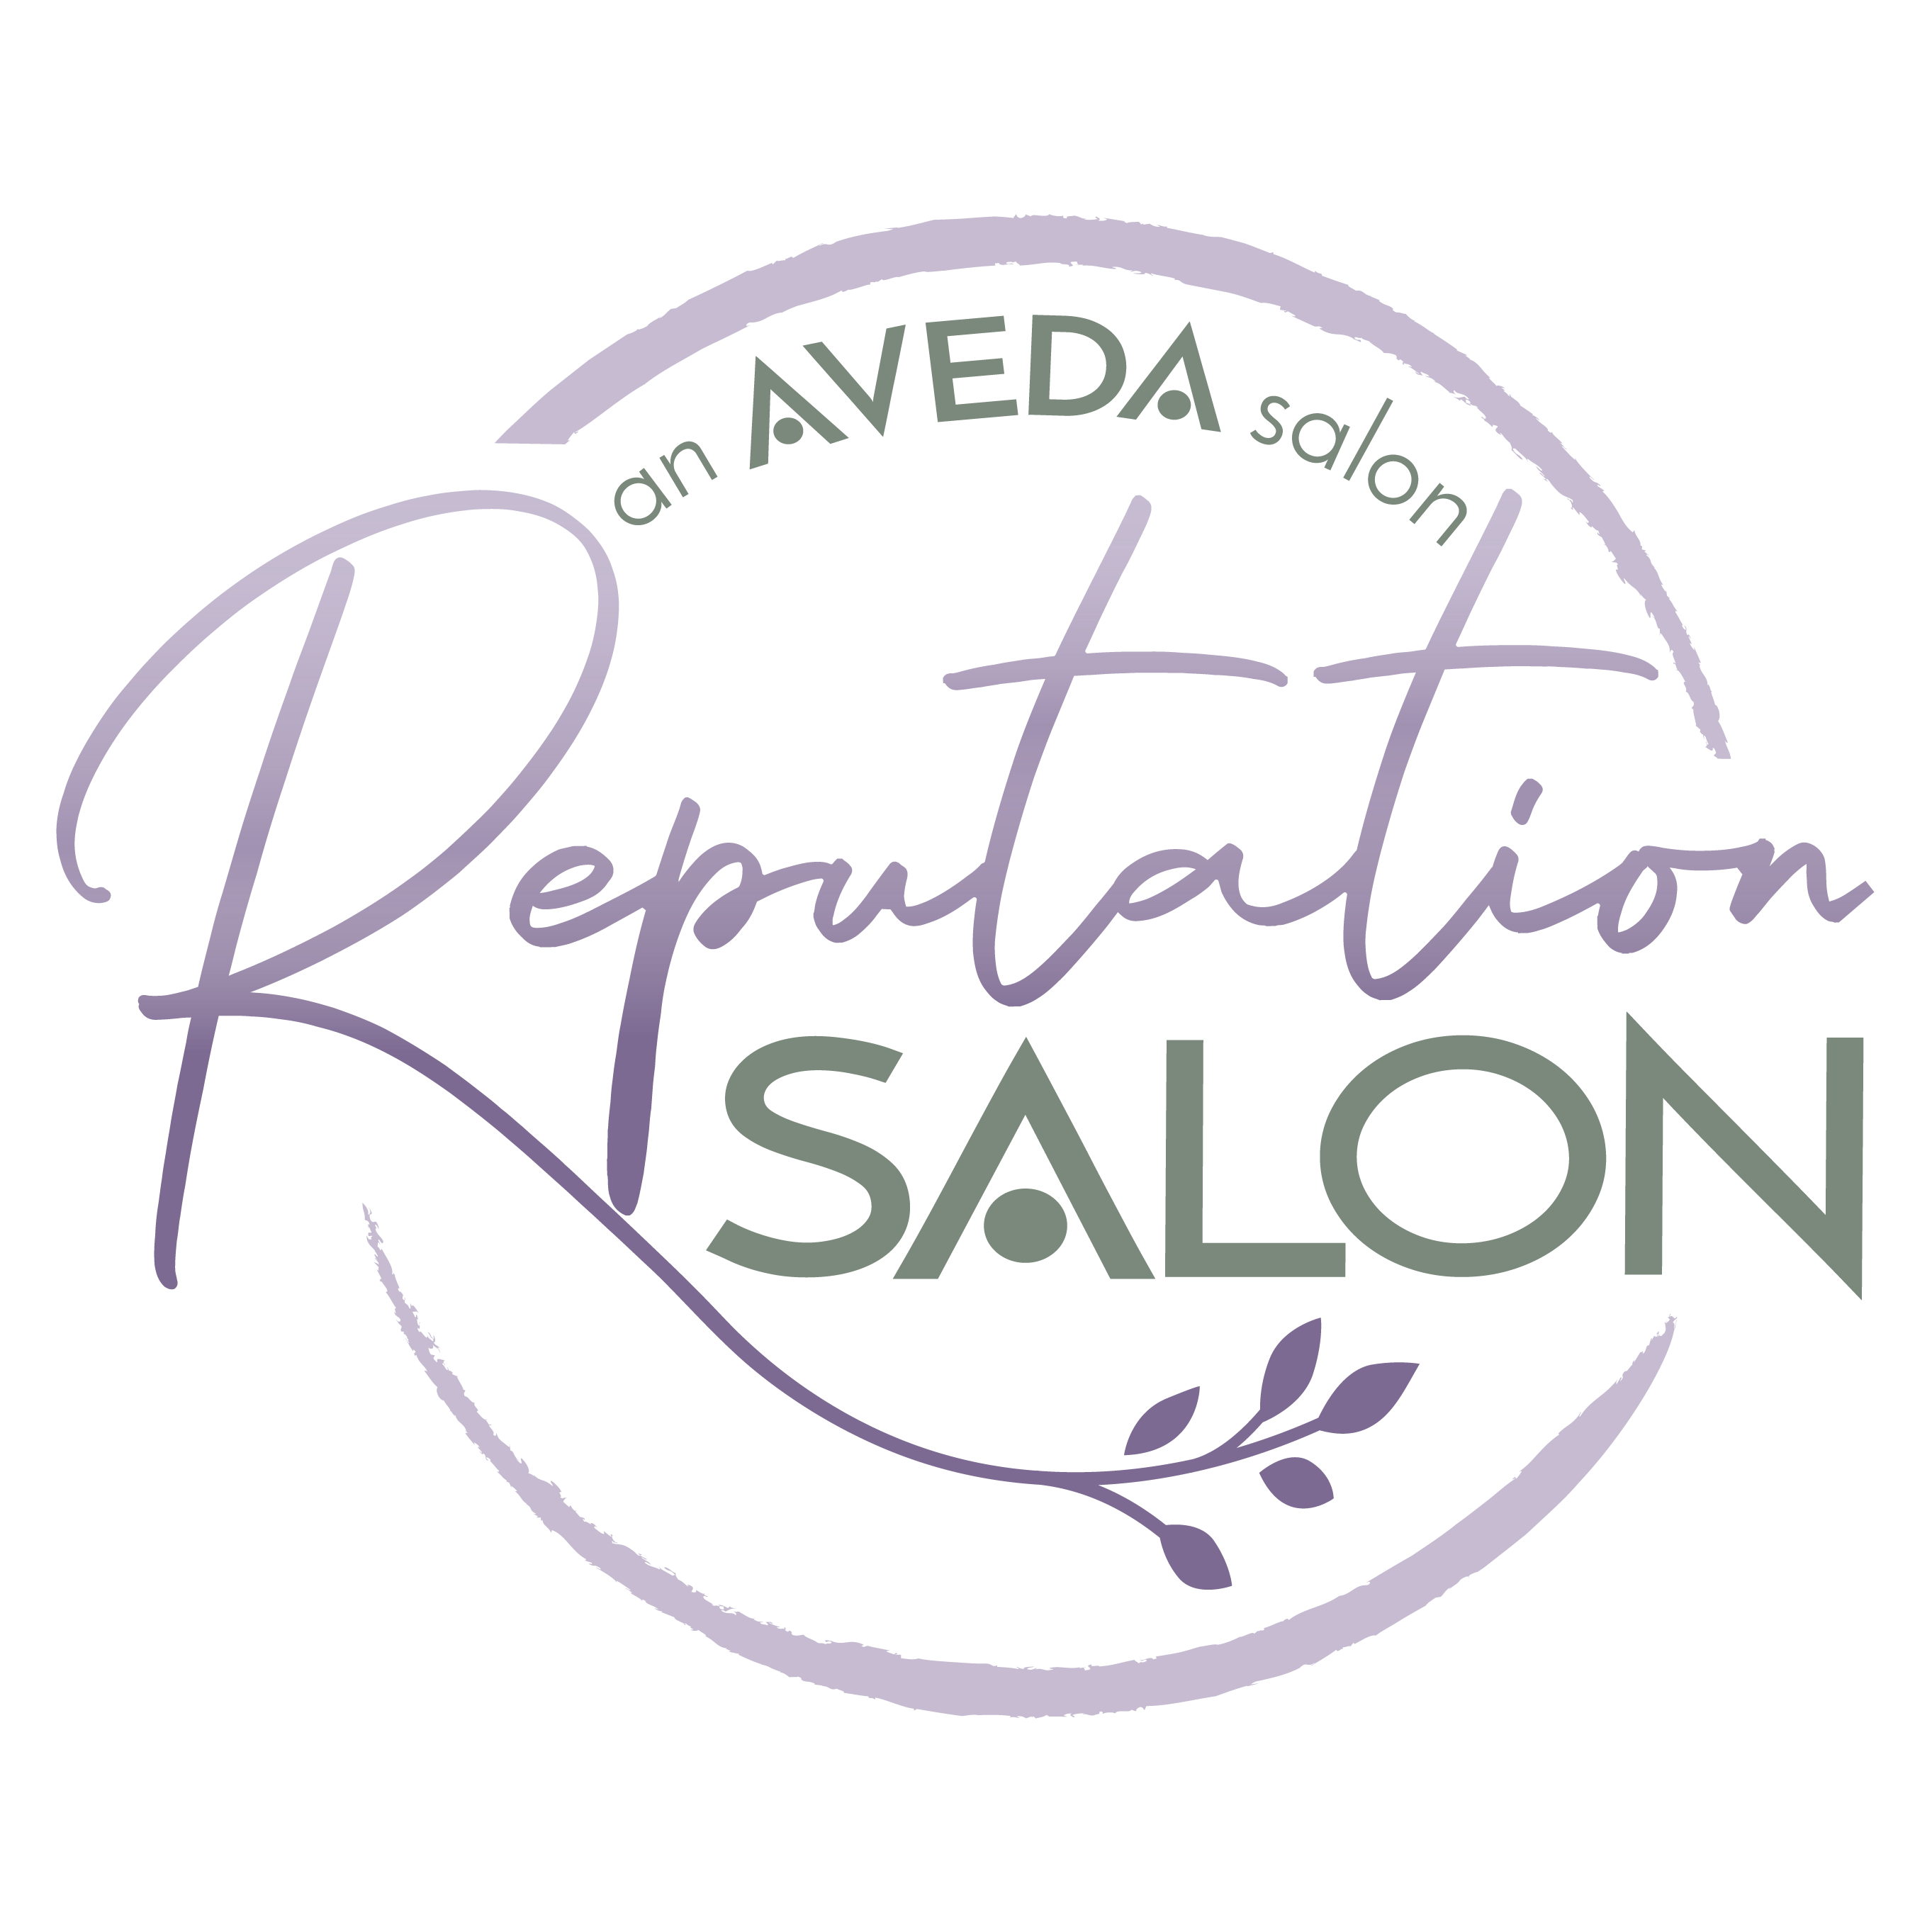 Reputation Salon :: an AVEDA Salon